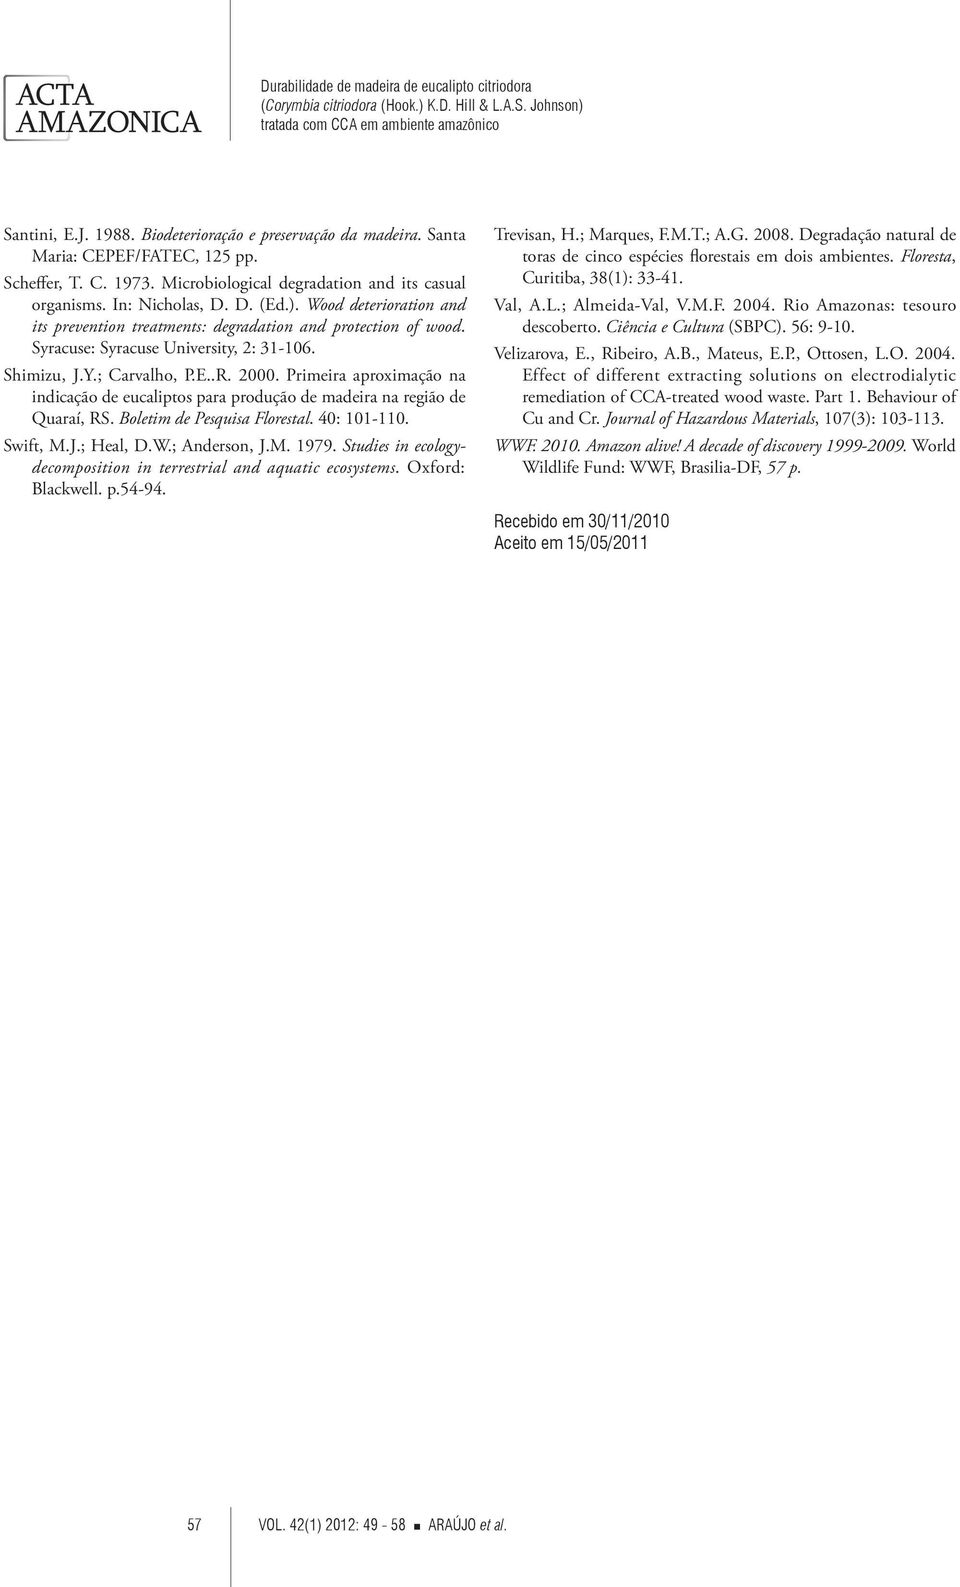 Primeira aproximação na indicação de eucaliptos para produção de madeira na região de Quaraí, RS. Boletim de Pesquisa Florestal. 40: 101-110. Swift, M.J.; Heal, D.W.; Anderson, J.M. 1979.